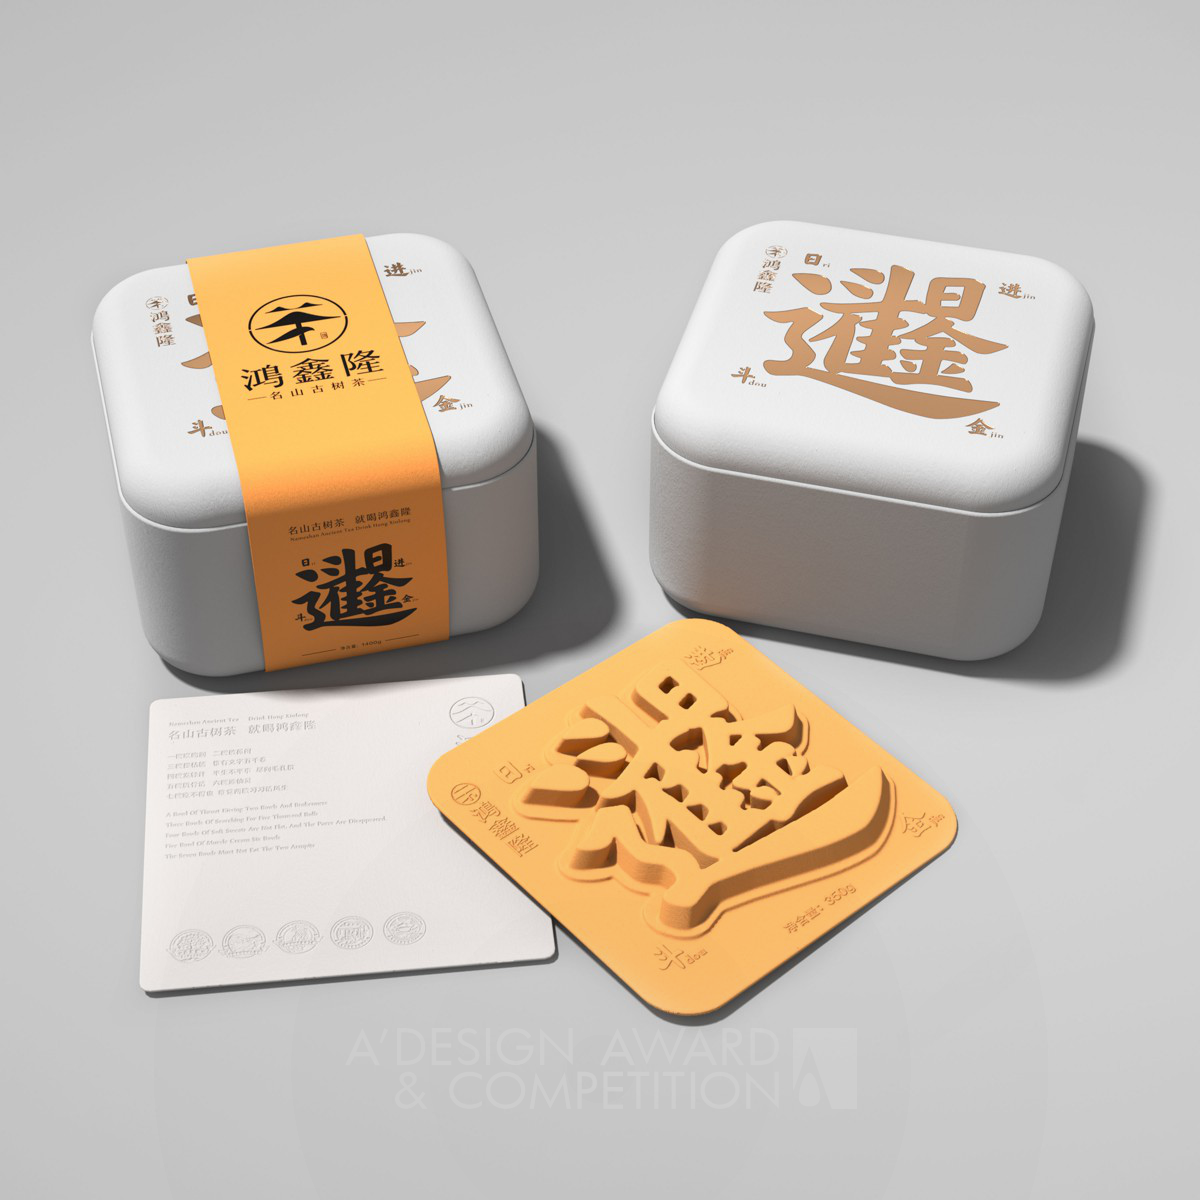 Hongxinlong Tea Packaging by YongQing Liu